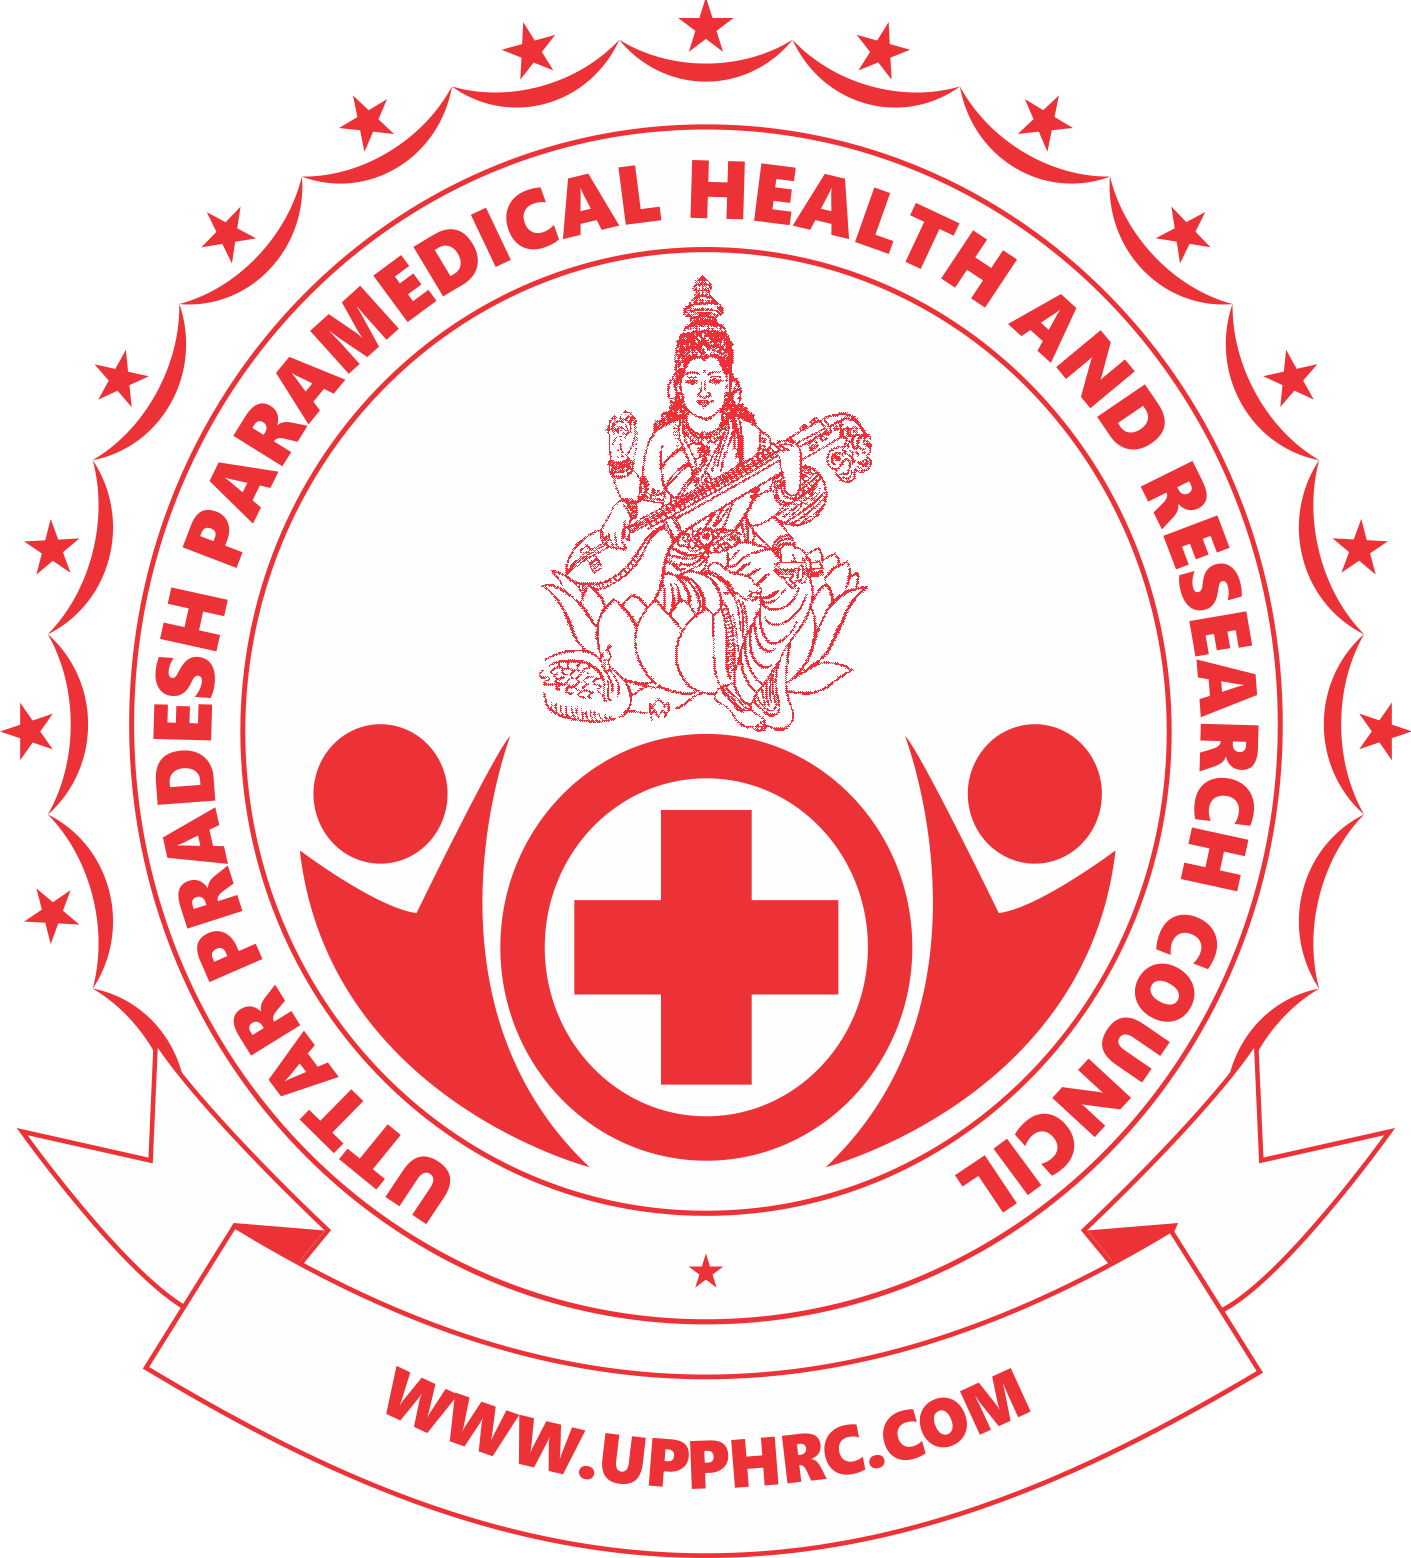 UTTAR PRADESH PARAMEDICAL HEALTH & RESEARCH COUNCIL